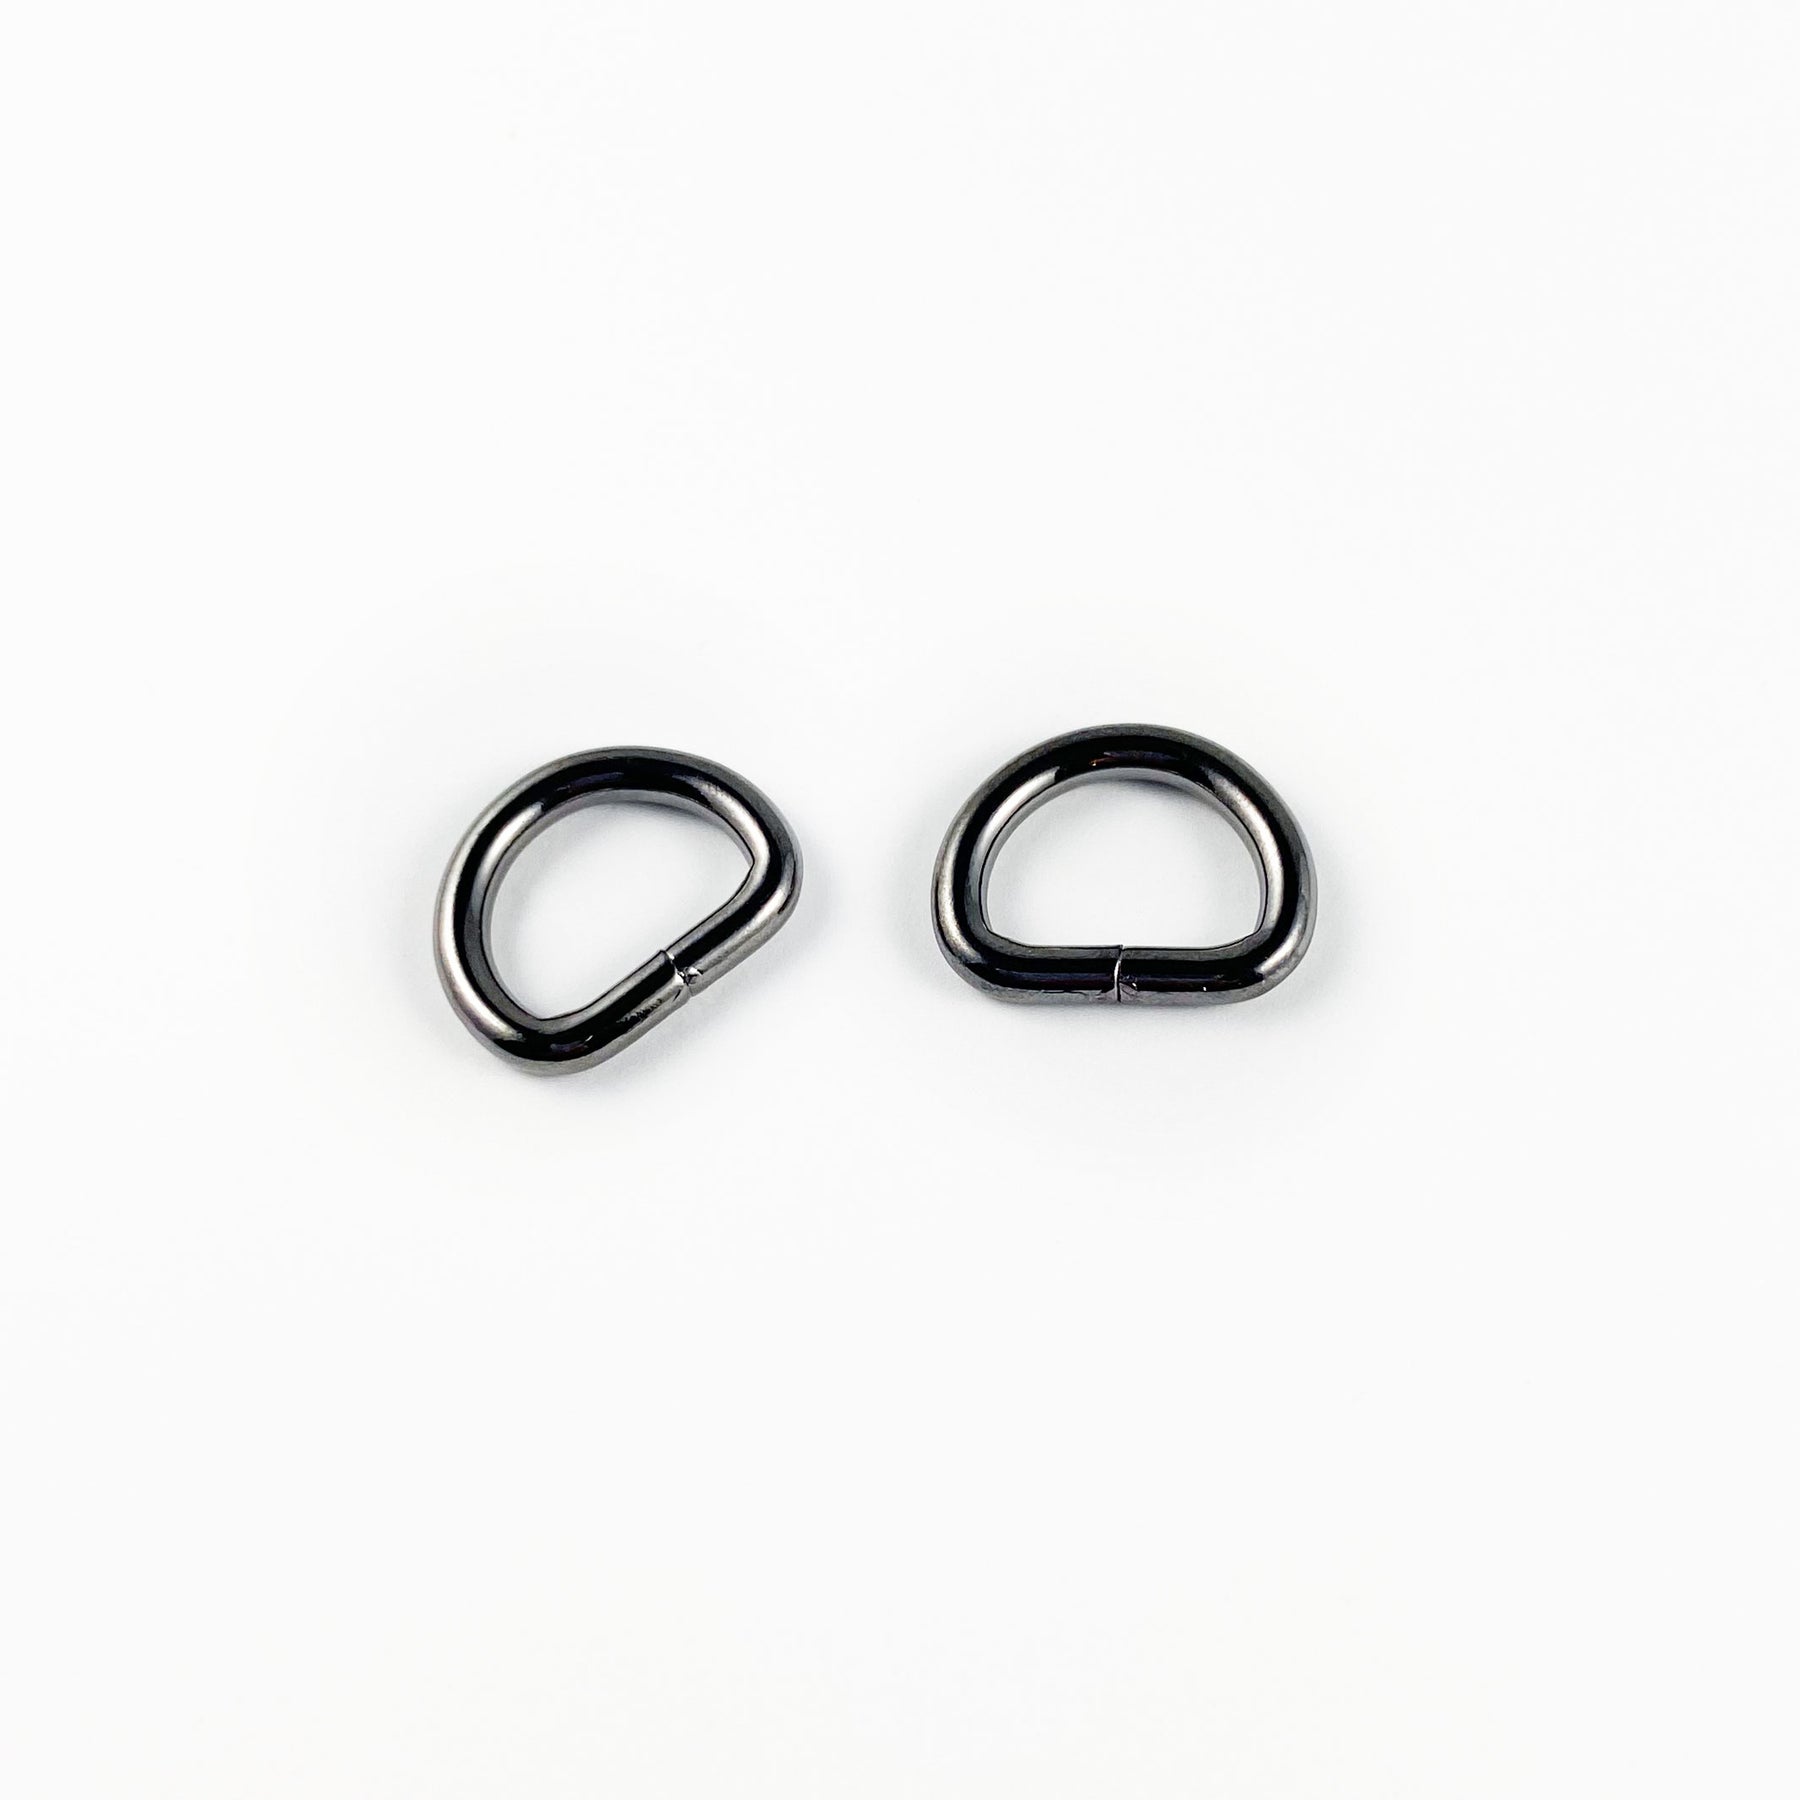 Dritz Metal D Rings 1-1/2 4/Pkg Black